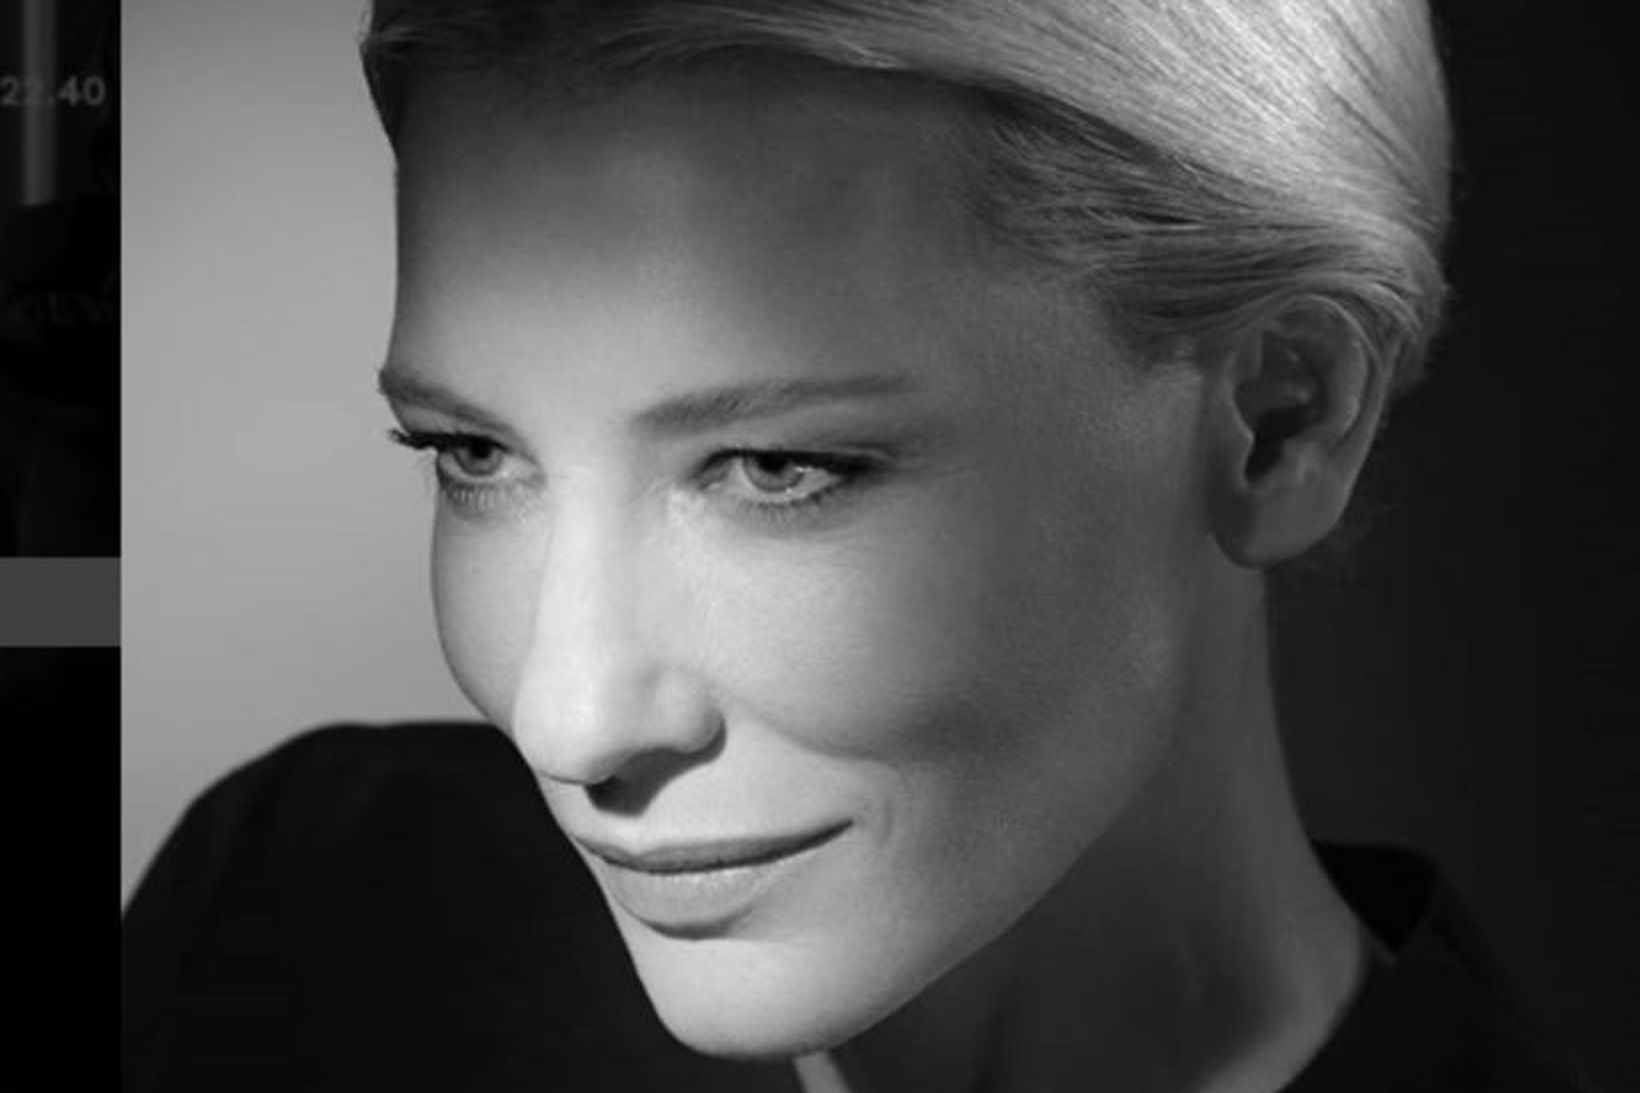 Ljósmynd af Cate Blanchett tekin í Studio Harcourt í París.